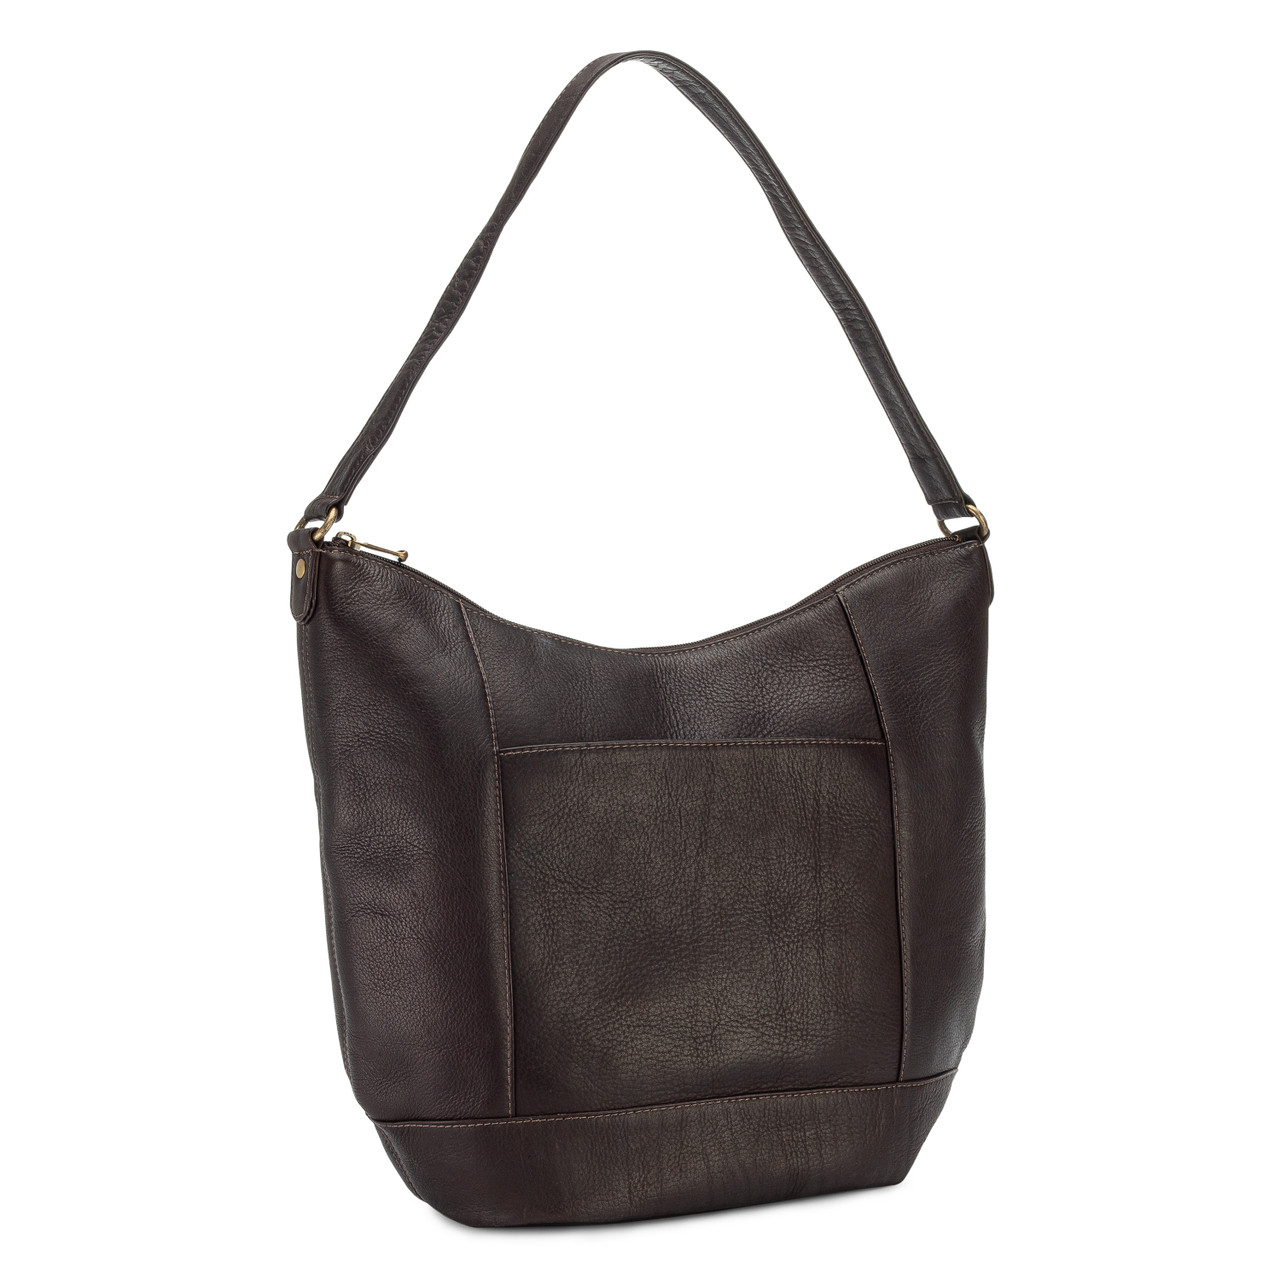 HESHE Women's Genuine Leather Purses and Handbags India | Ubuy